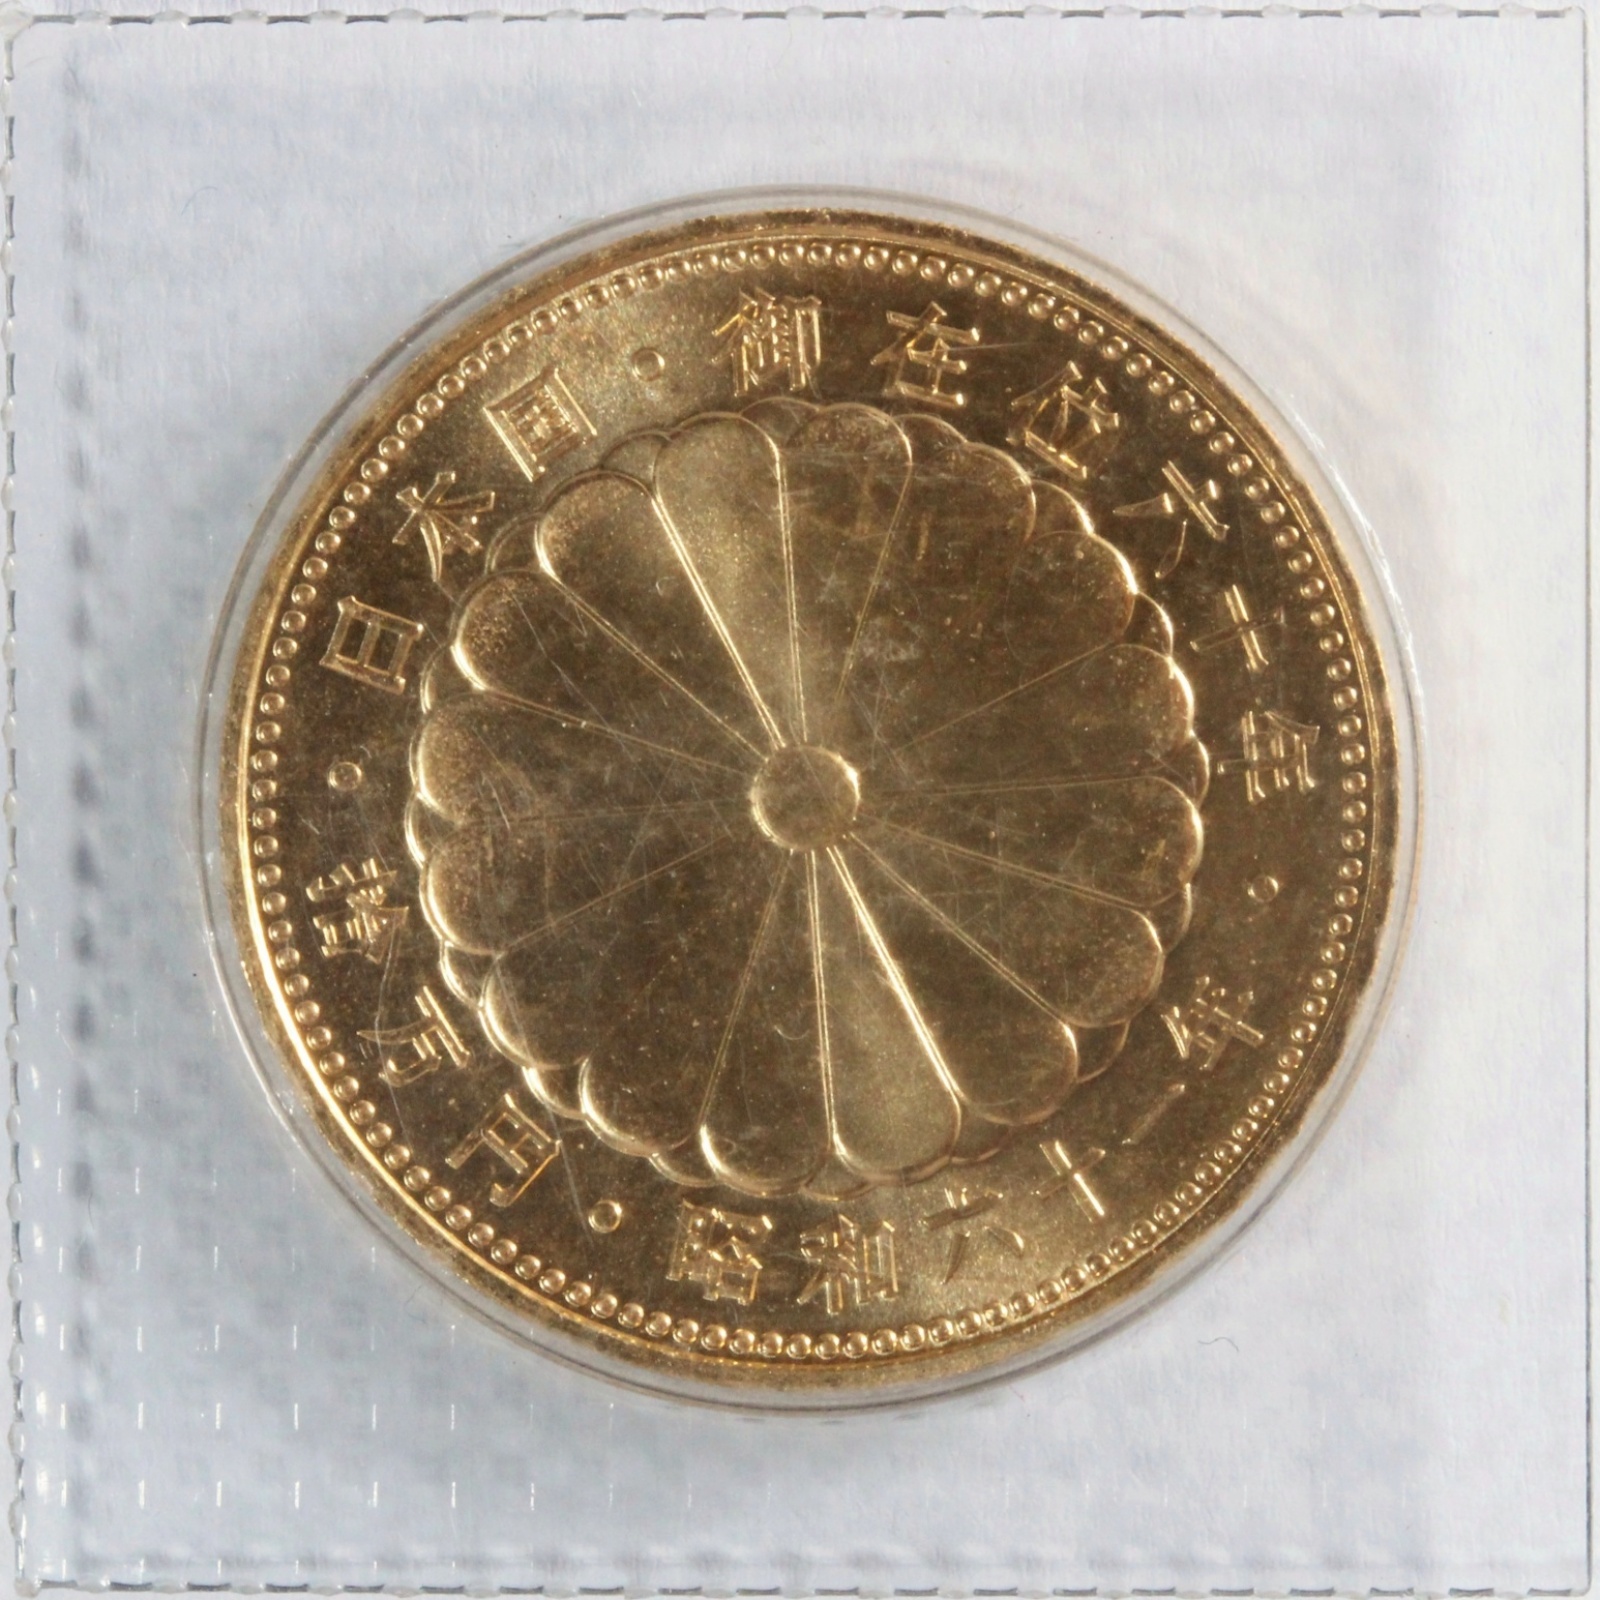 【業界最安値】昭和天皇御在位60年記念10万円金貨 古銭 記念コイン 純金20g 貨幣 ミスターコインズ